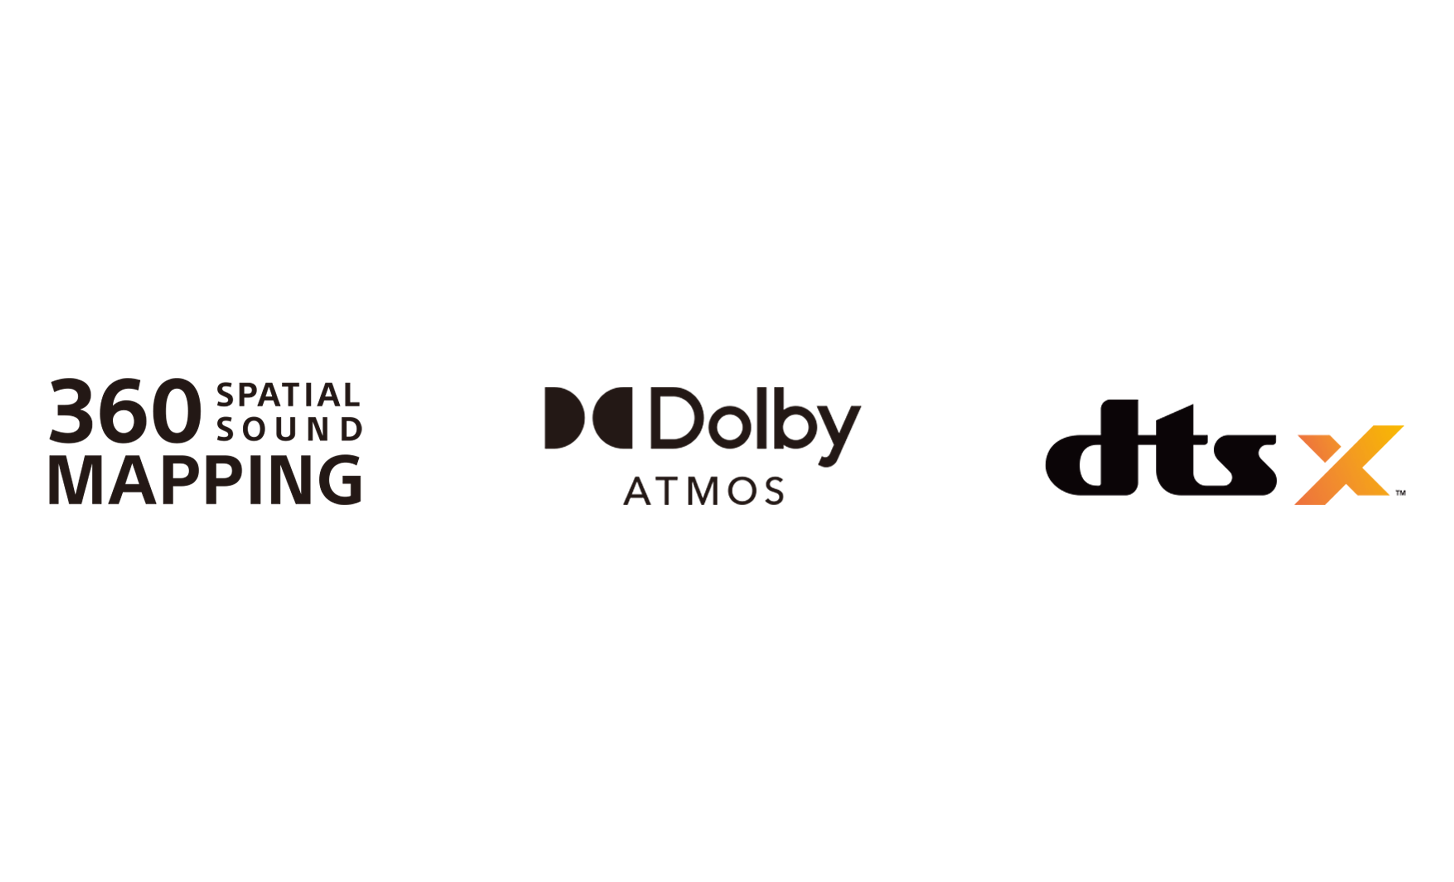 Logotip 360 Spatial Sound Mapping, logotip Dolby Atmos, logotip dtsX